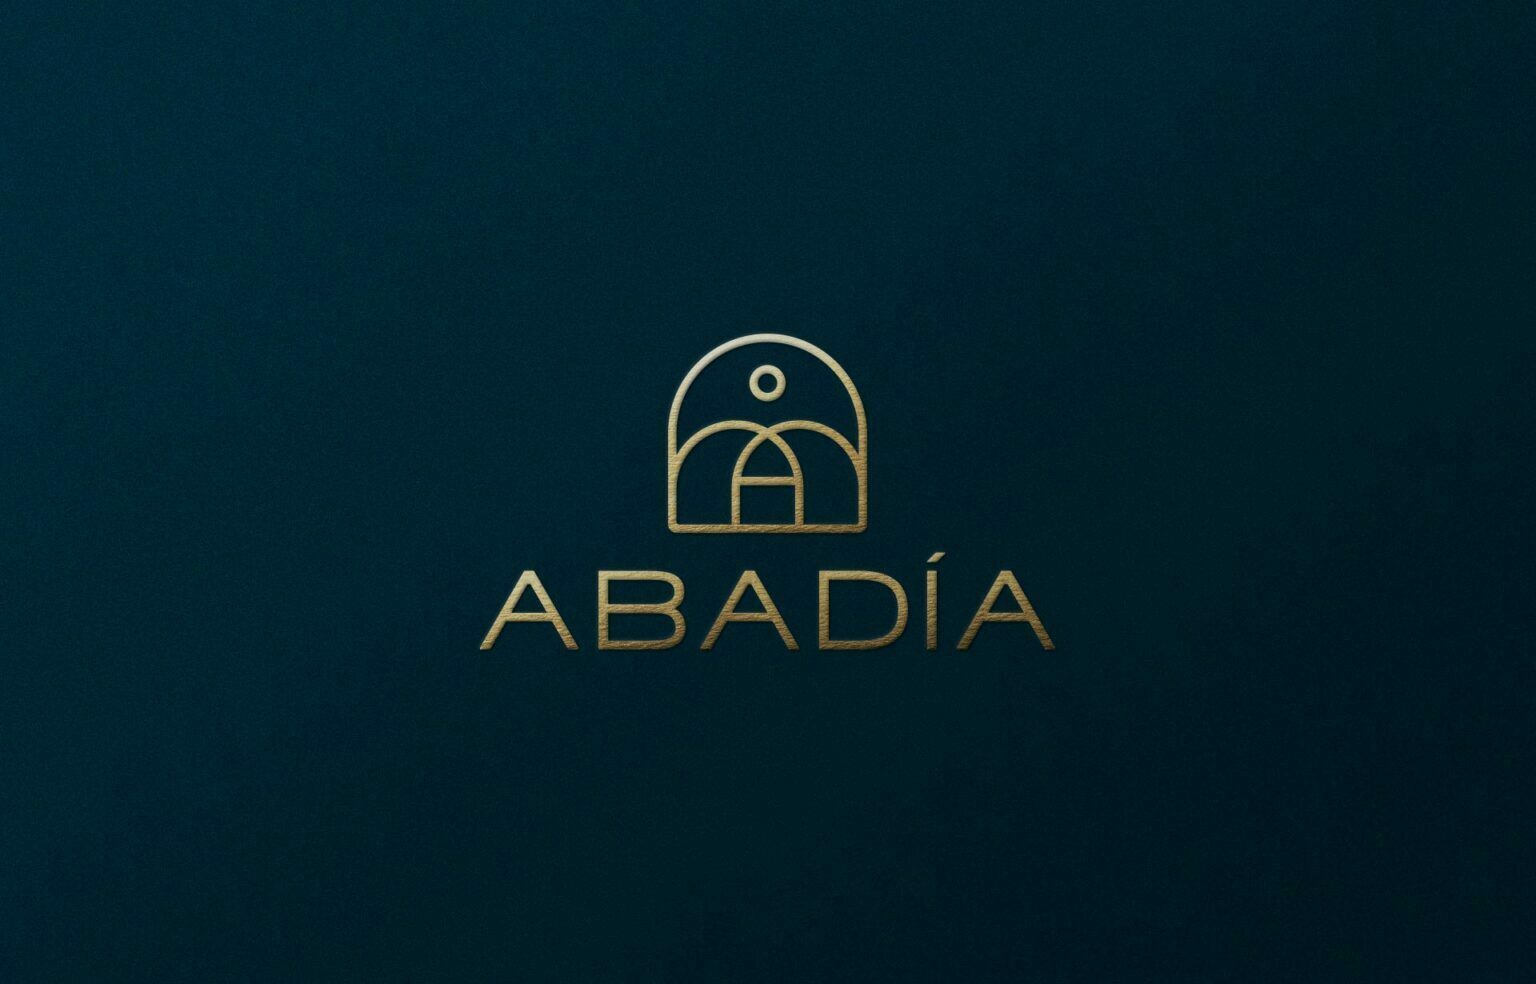 Abadia by Umbel Partners